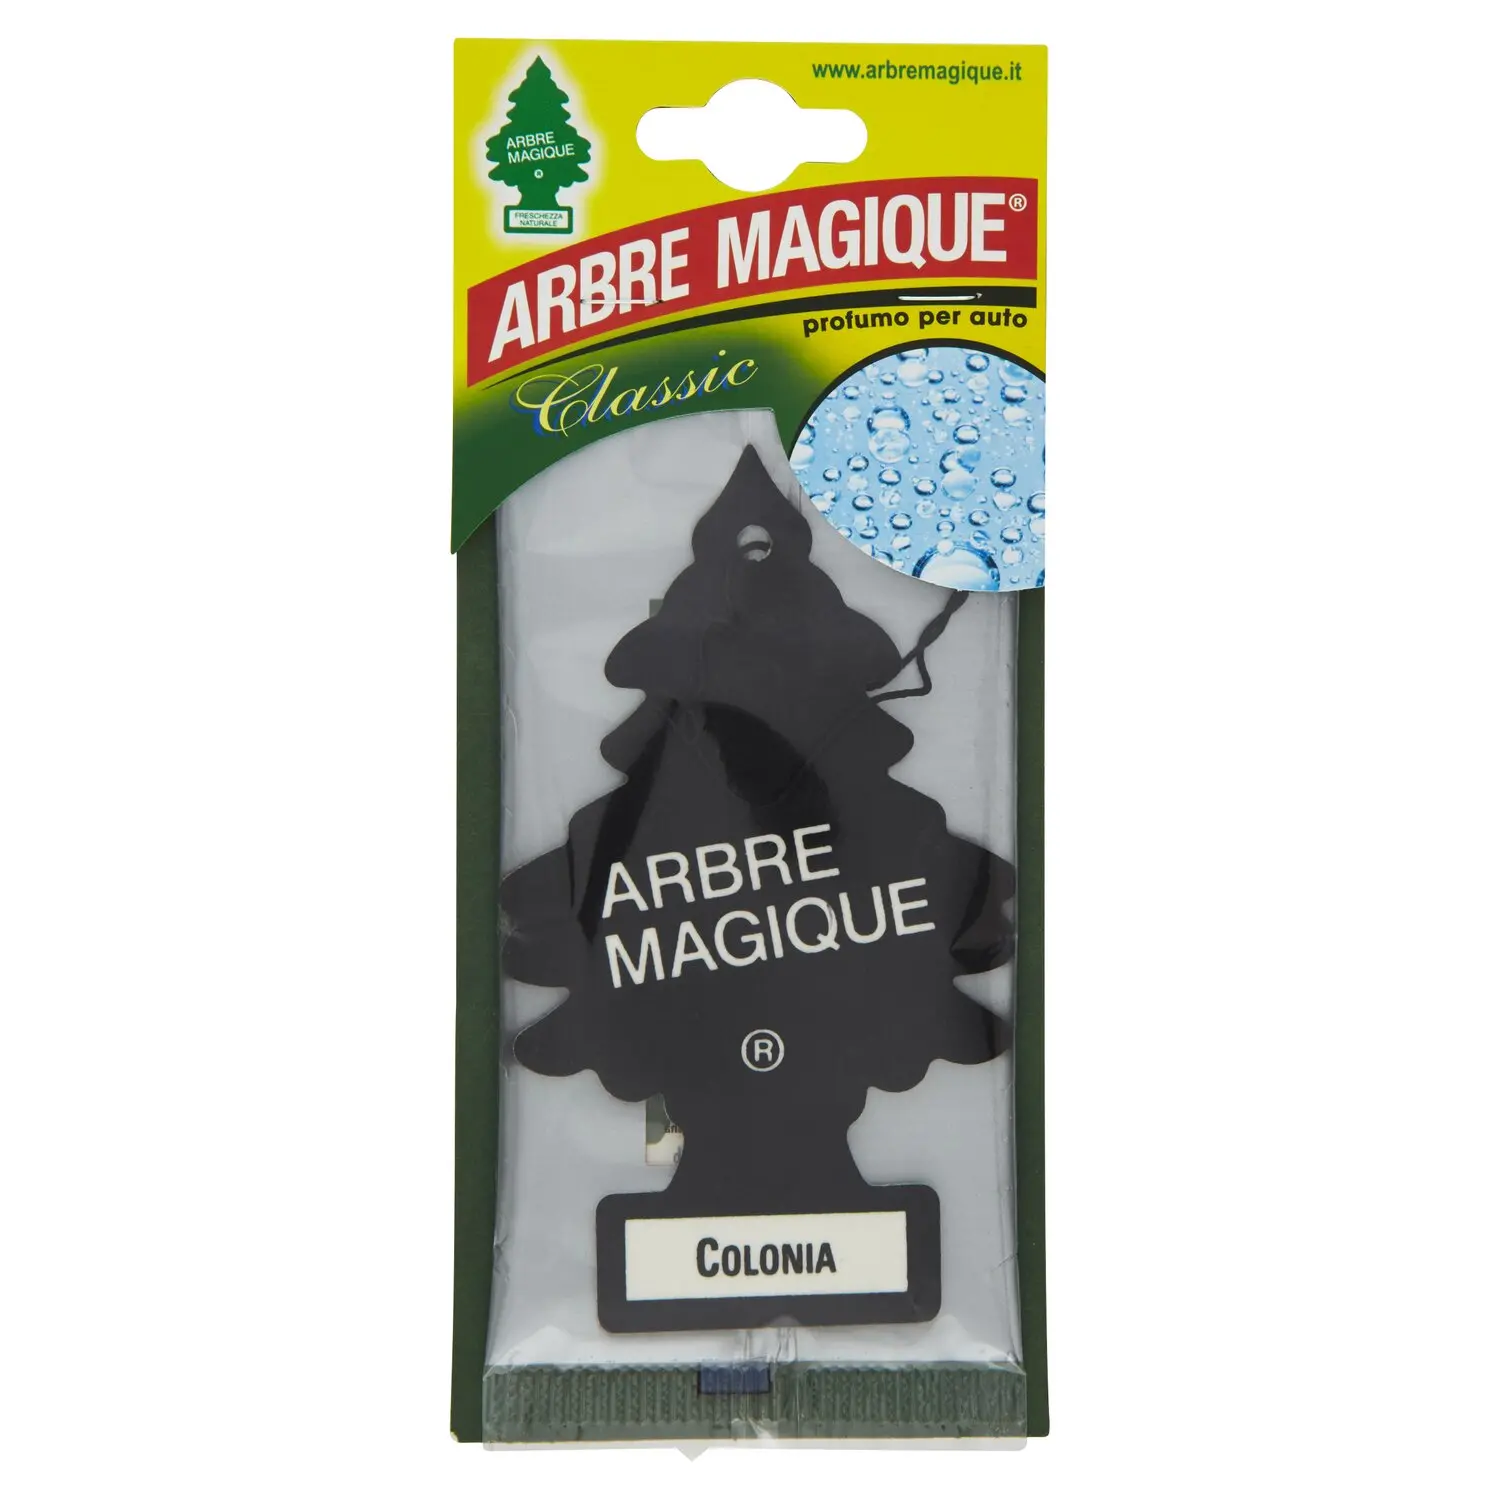 Arbre Magique Classic Colonia 5 g